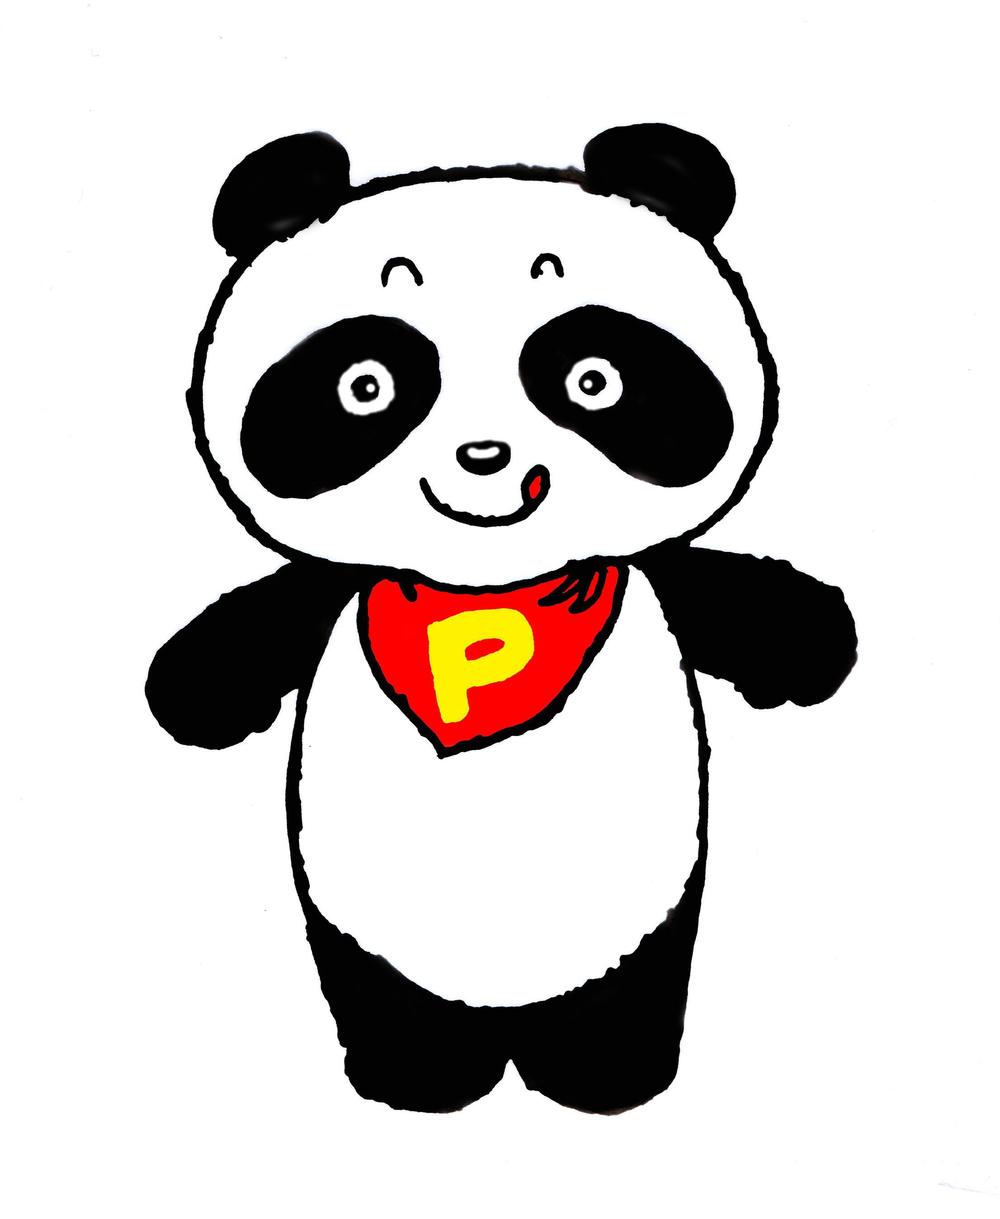 p2-panda.jpg